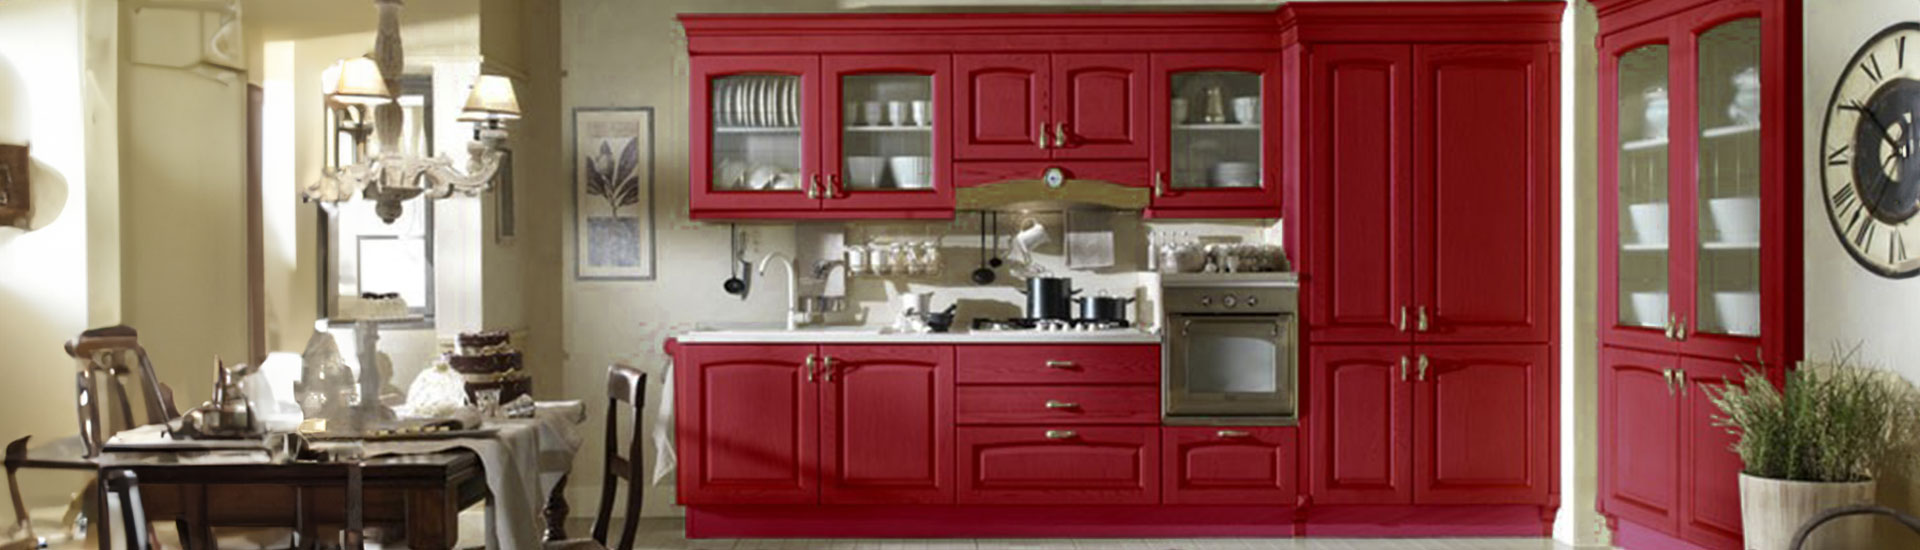 Maroon Kitchen Cabinet Wraps